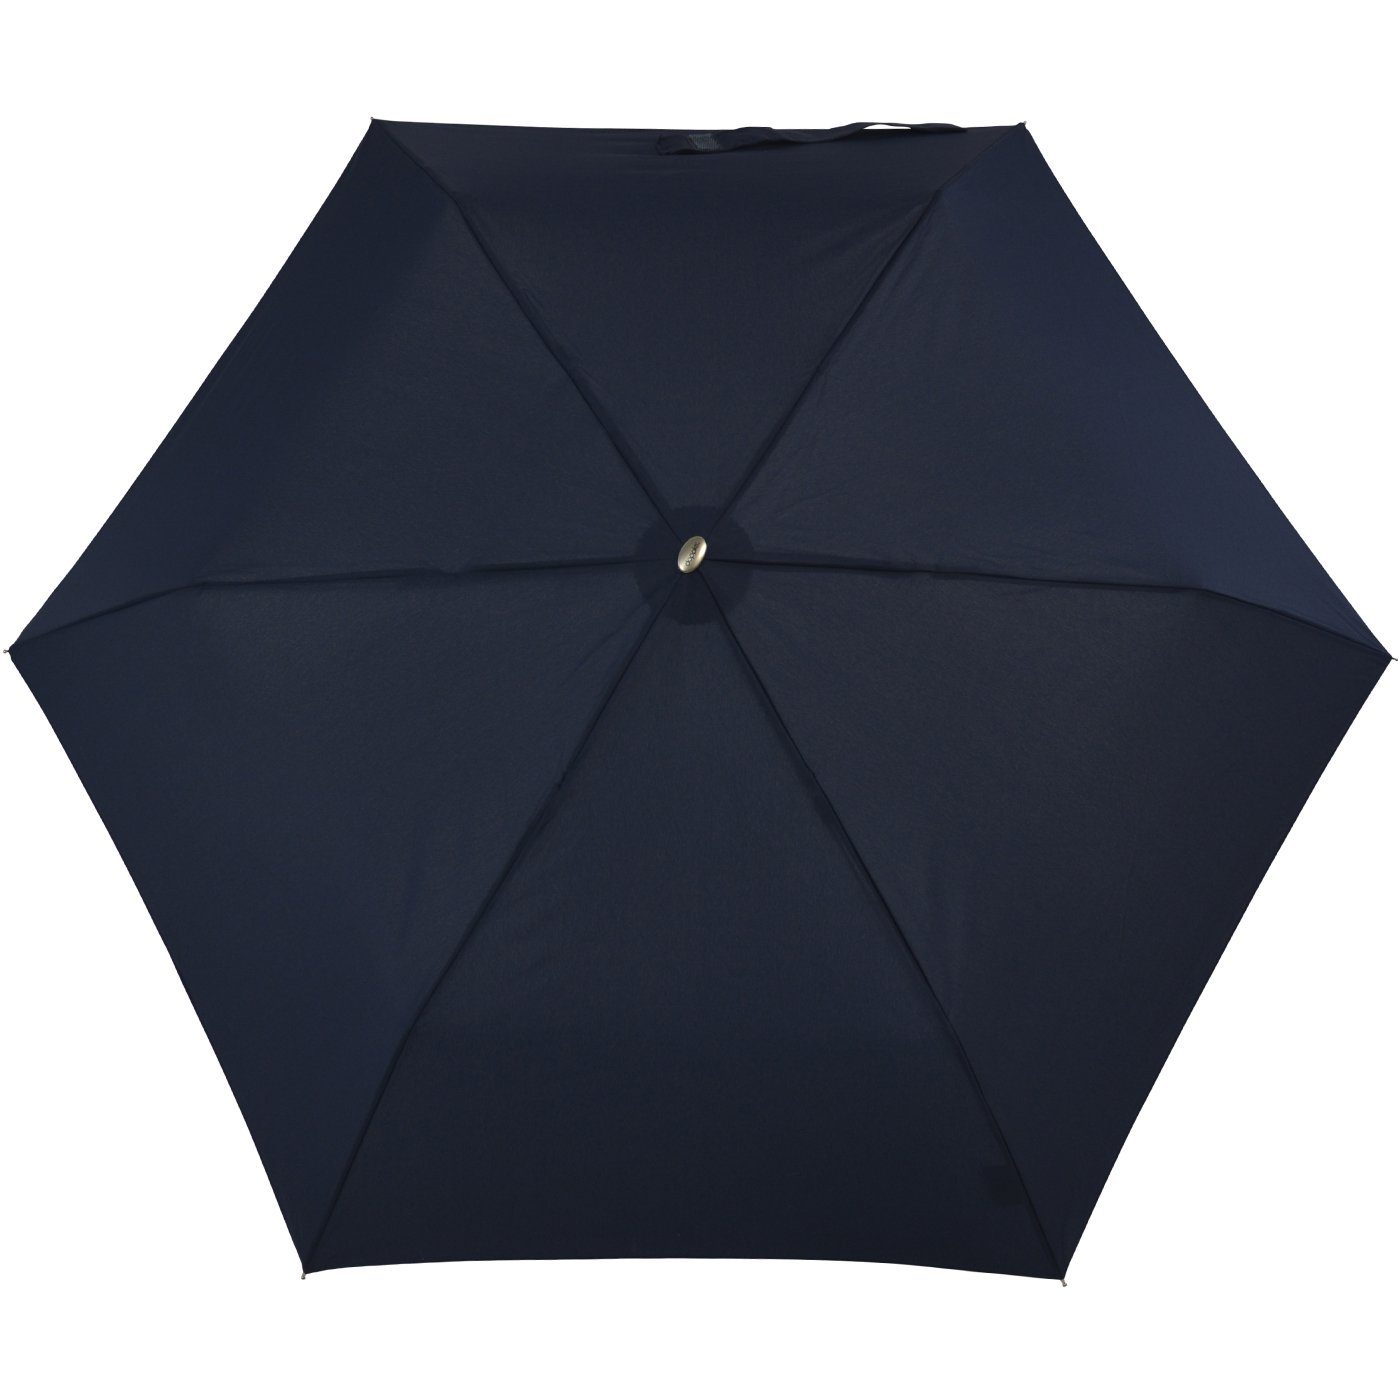 für Platz findet Schirm doppler® ein treue leichter dieser und Tasche, Langregenschirm flacher jede überall Begleiter